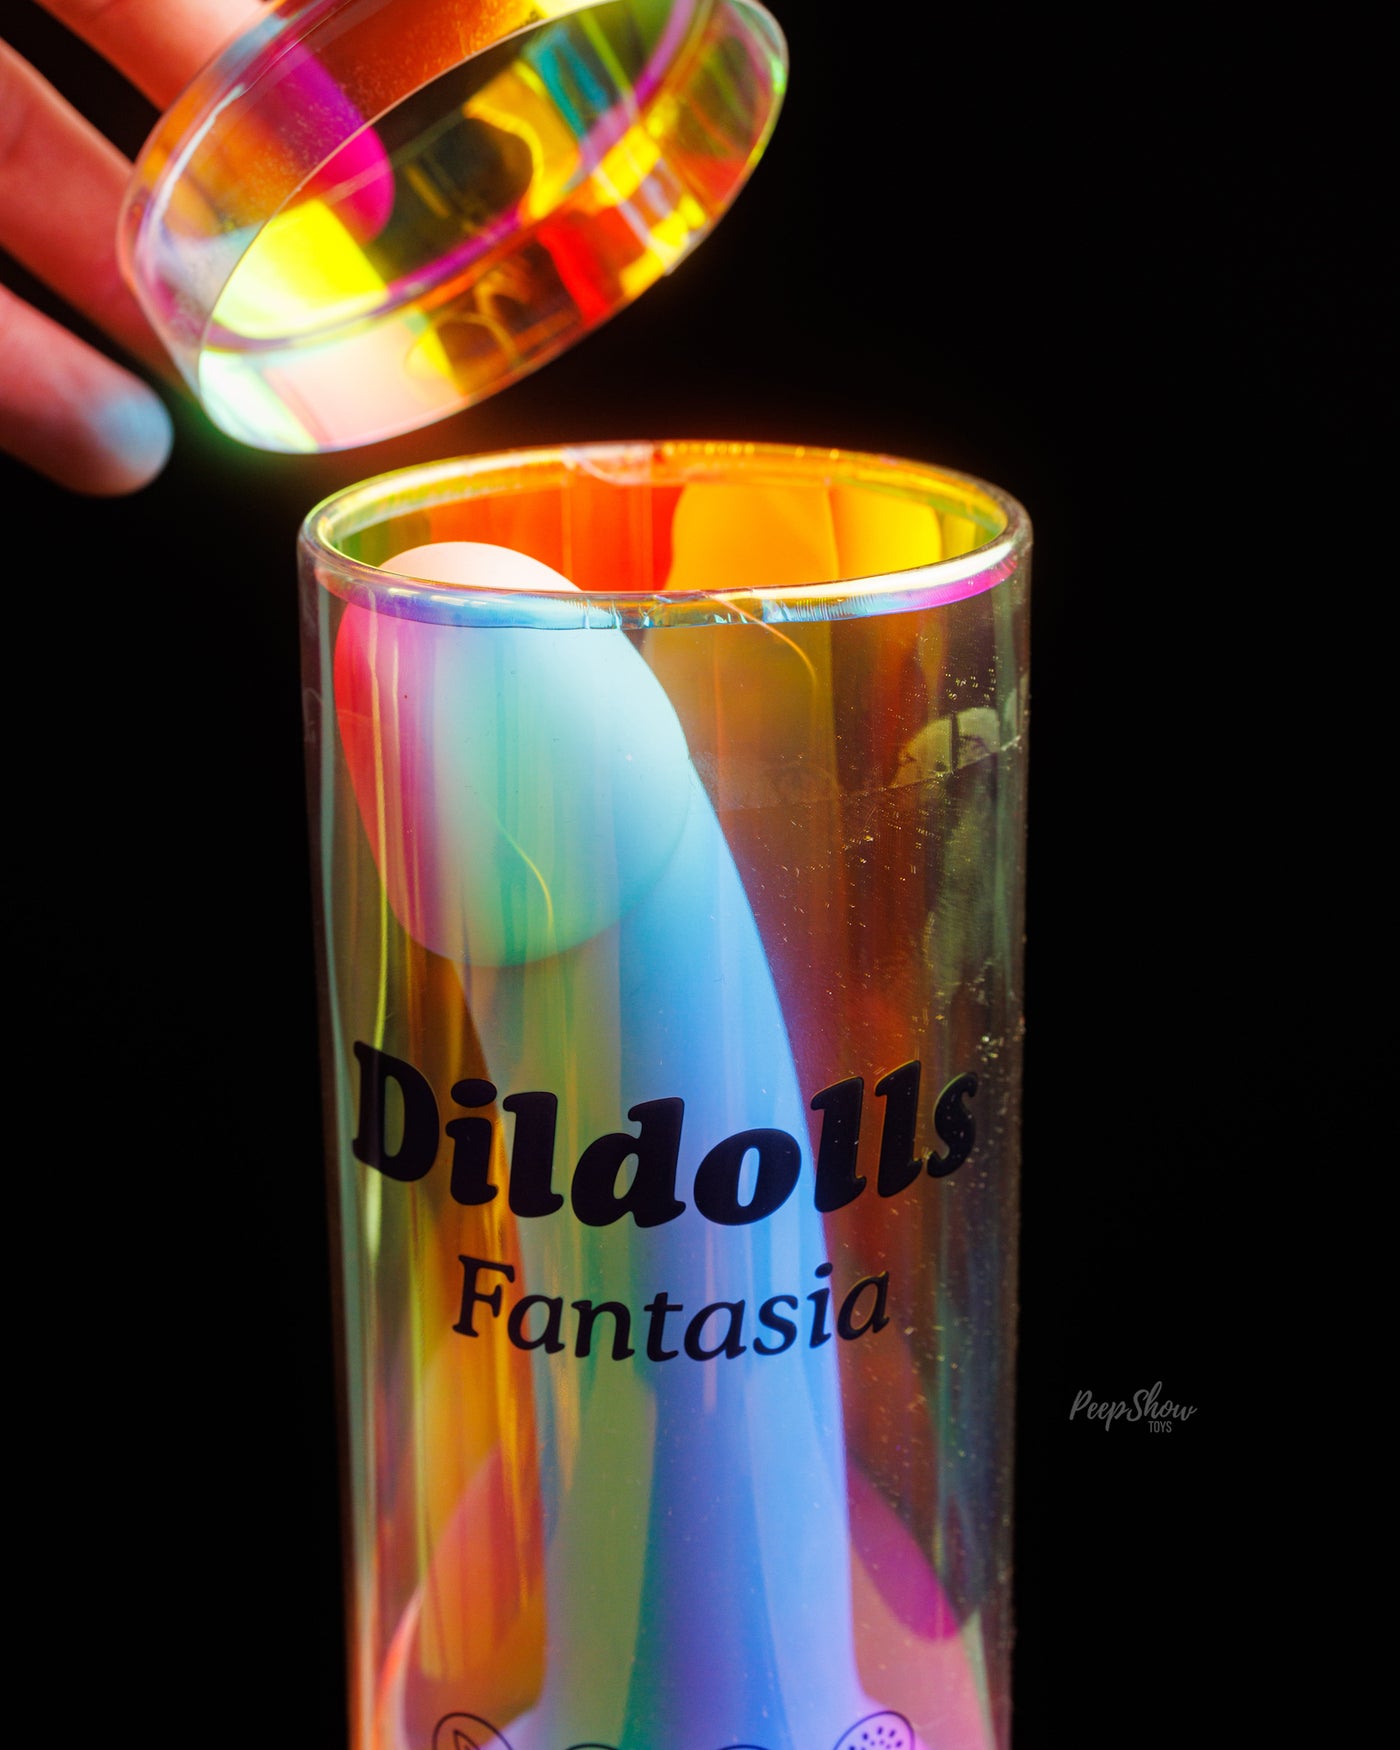 Dildolls Fantasia Dildo in packaging